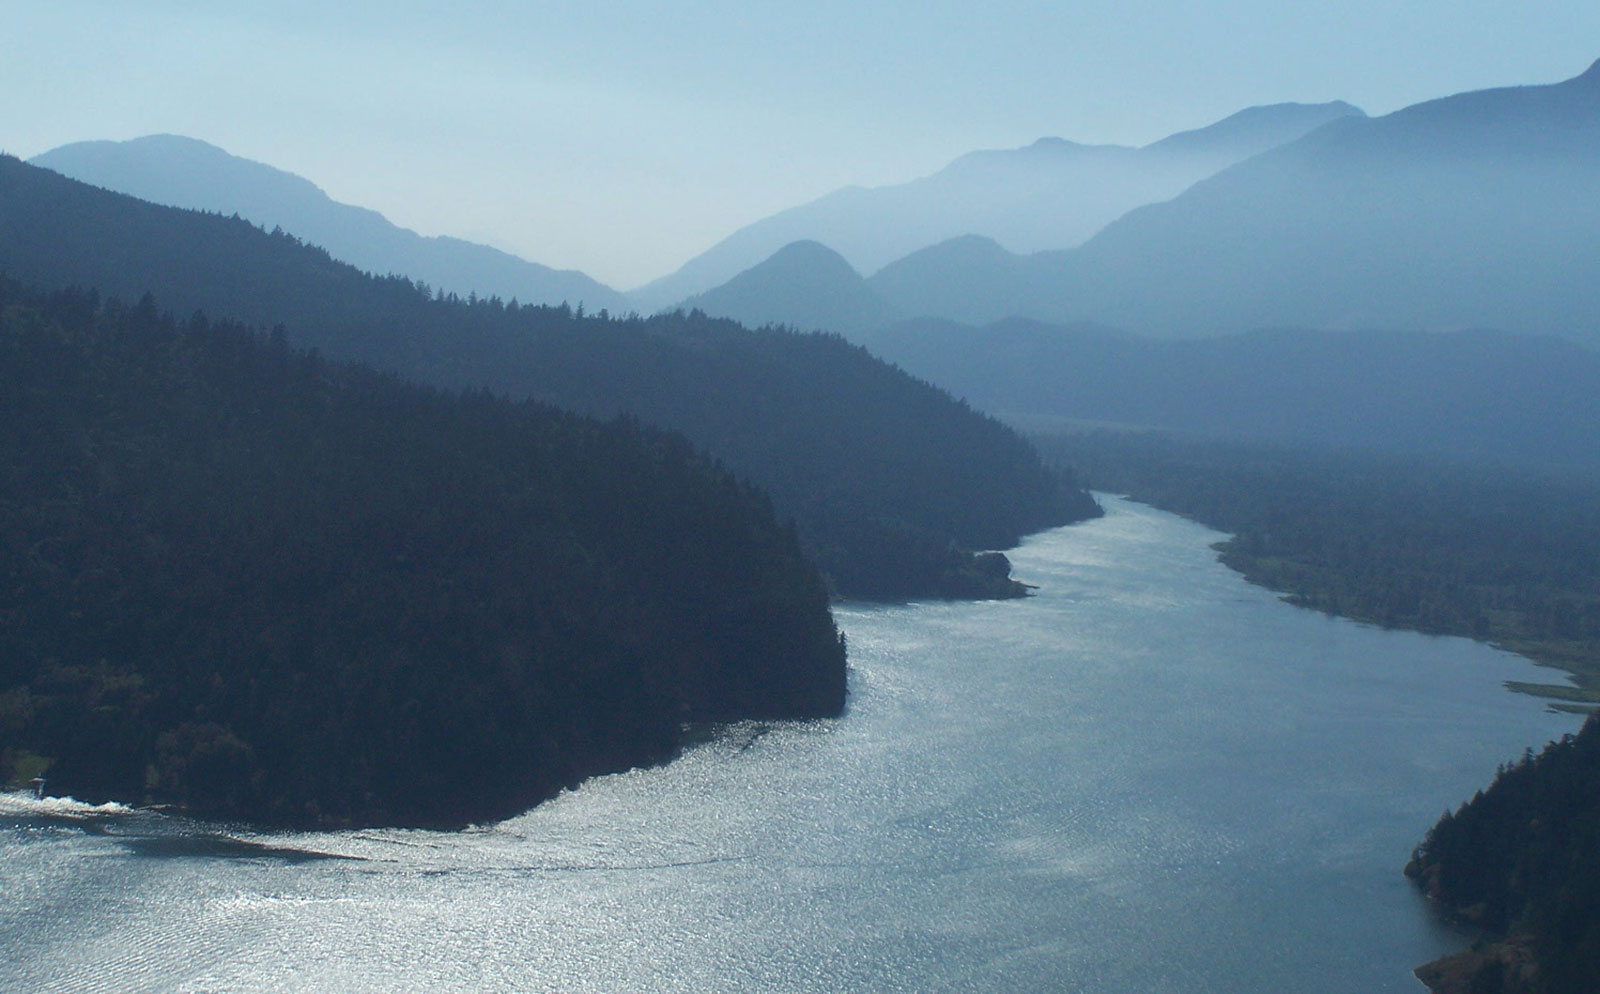 Une vue aérienne de la rivière Harrison et des montagnes avoisinantes.